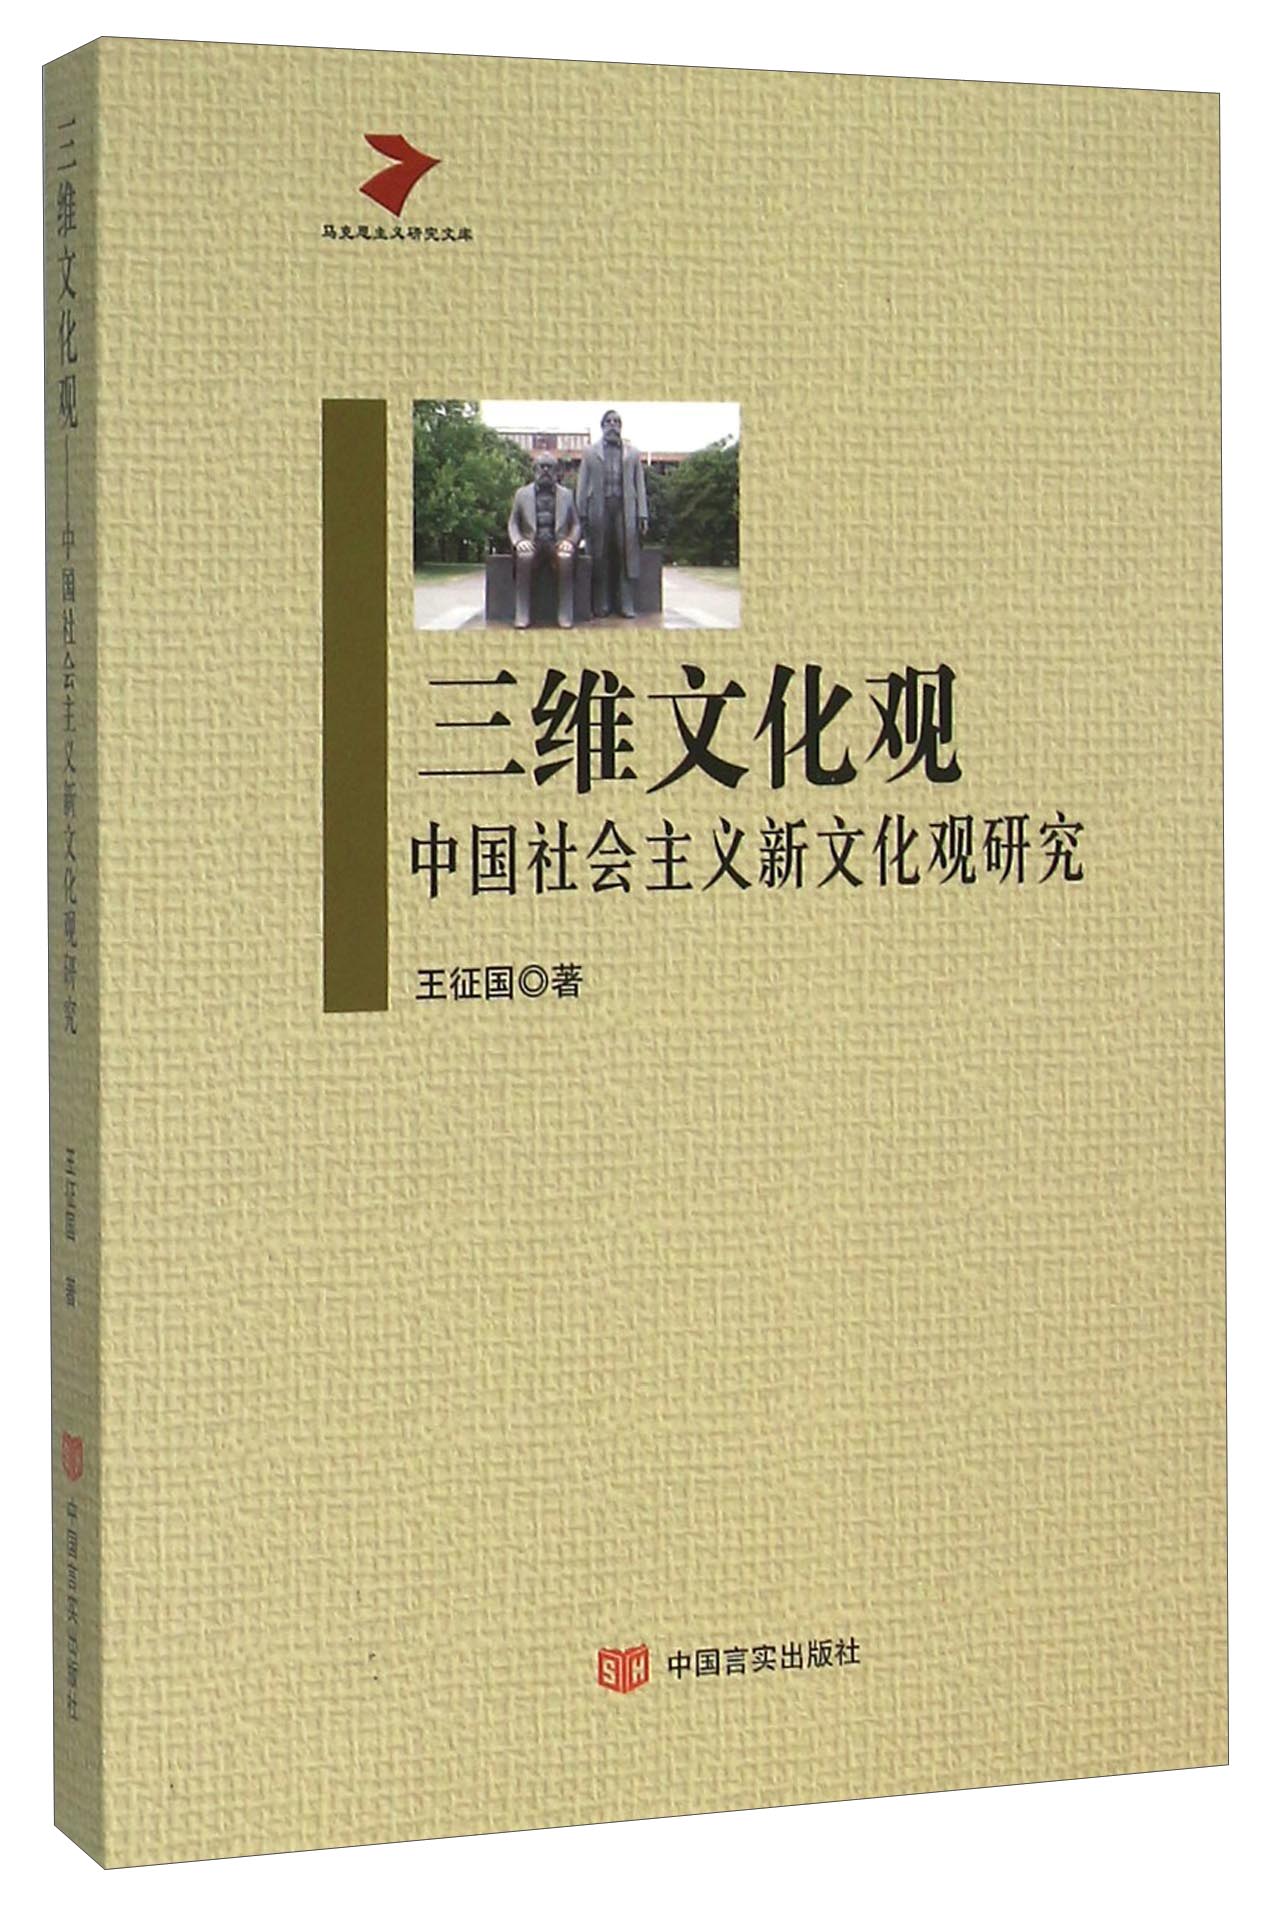 三维文化观 中国社会主义新文化观研究 azw3格式下载